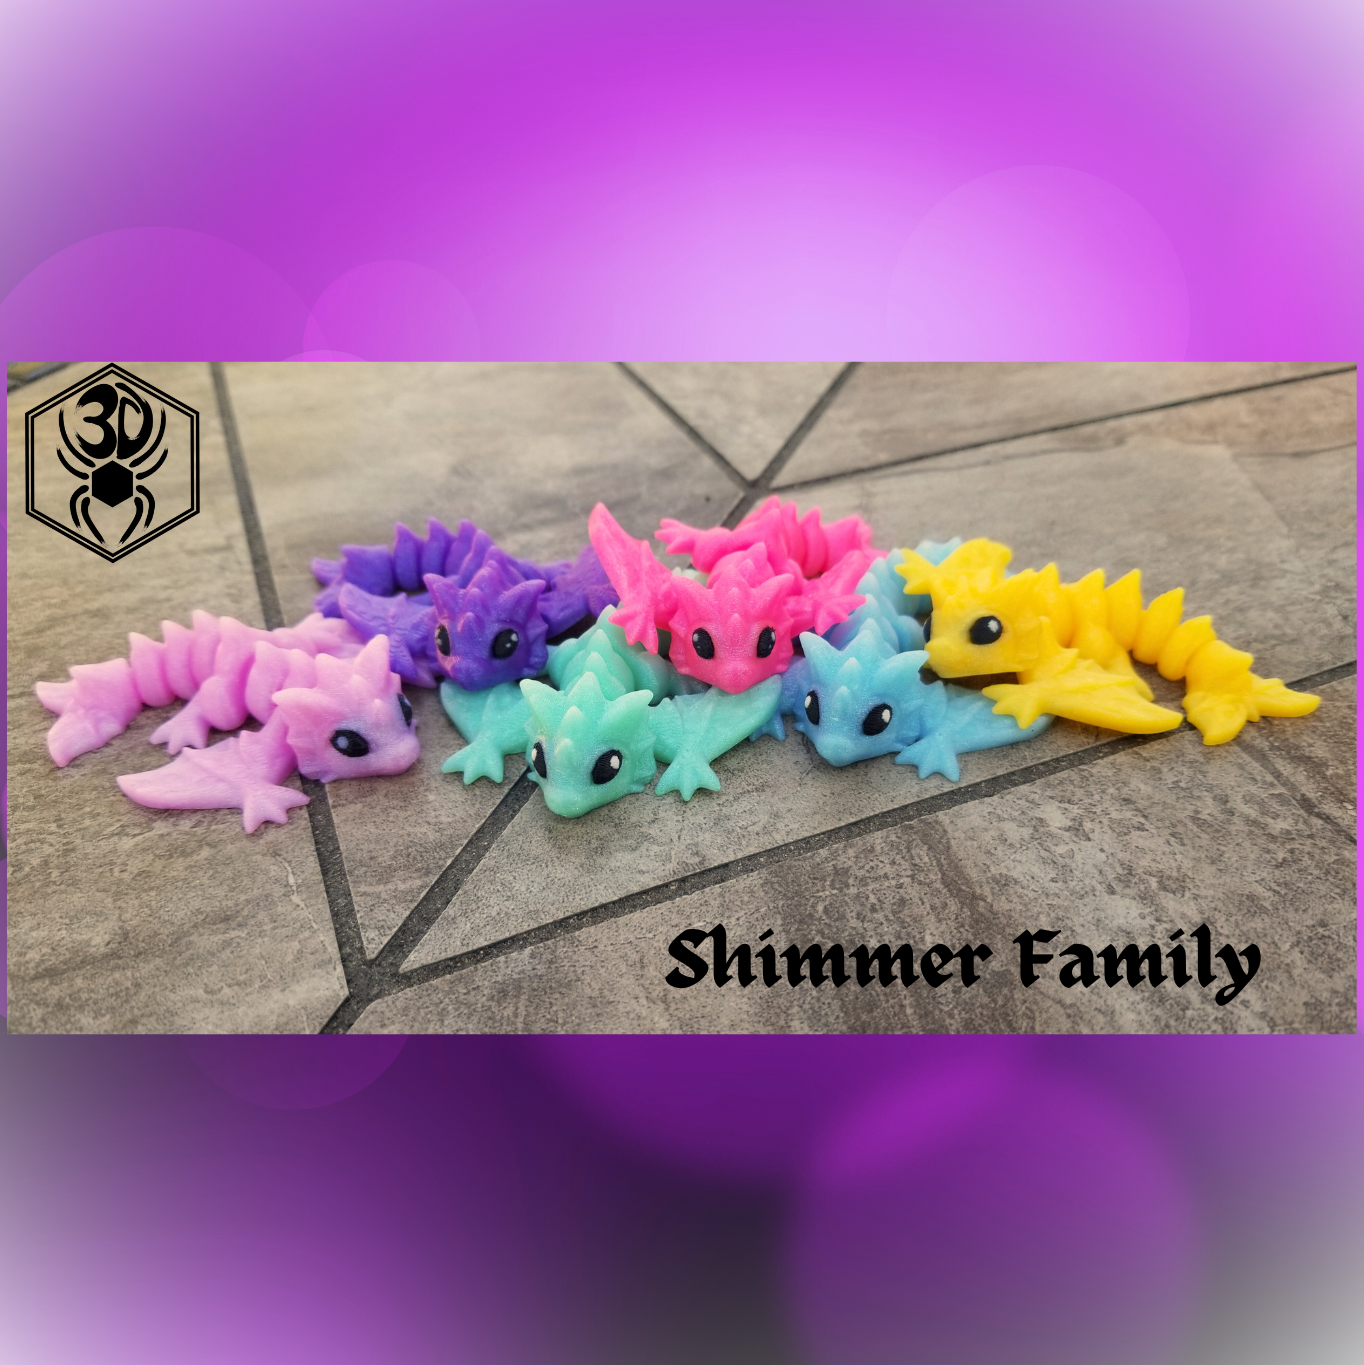 Tiny Wyverns - Shimmer Family